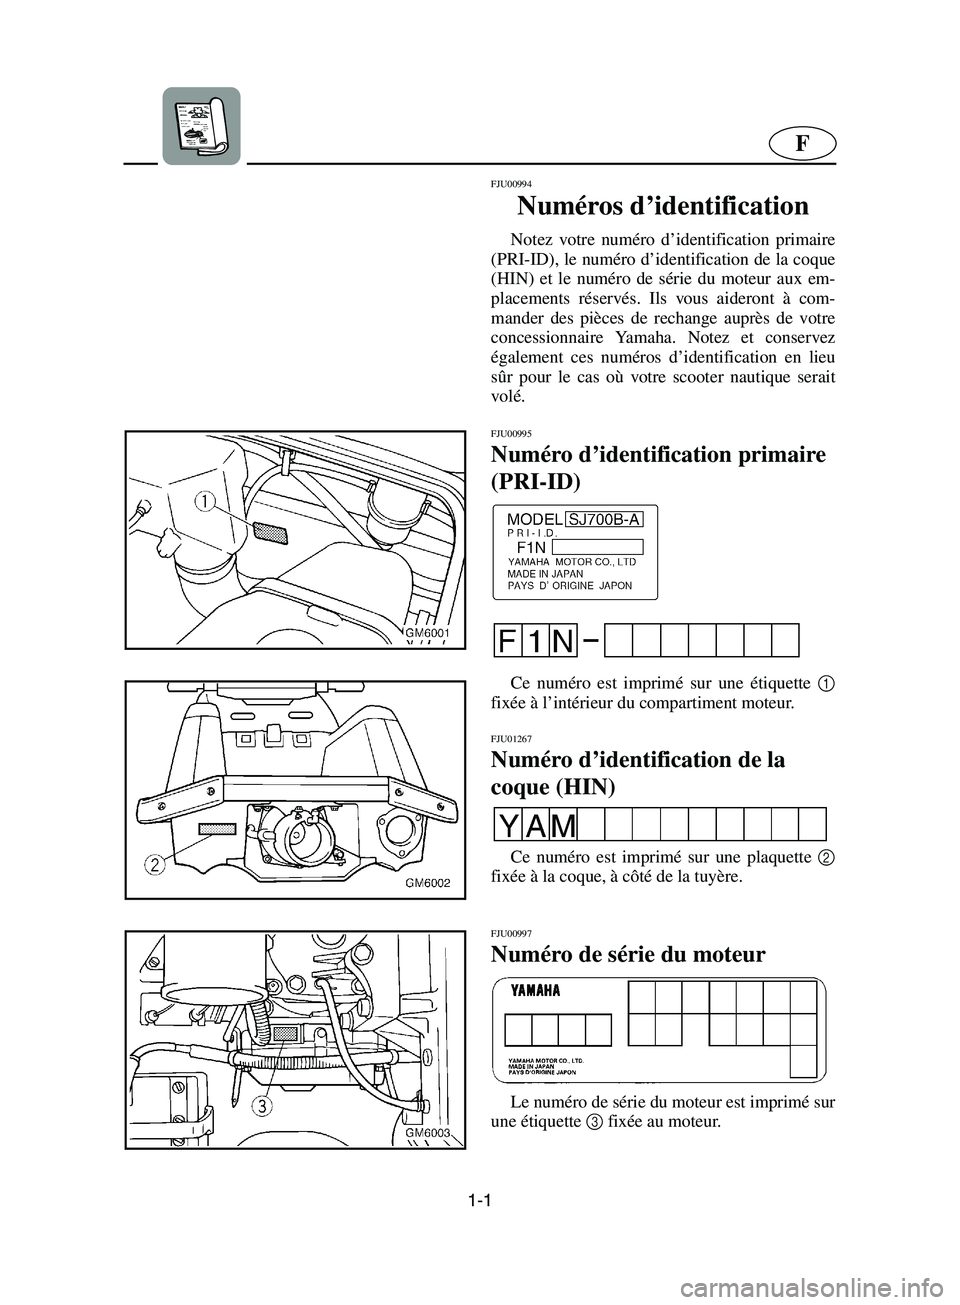 YAMAHA SUPERJET 2002  Manuale de Empleo (in Spanish) 1-1
F
FJU00994 
Numéros d’identification  
Notez votre numéro d’identification primaire
(PRI-ID), le numéro d’identification de la coque
(HIN) et le numéro de série du moteur aux em-
placem